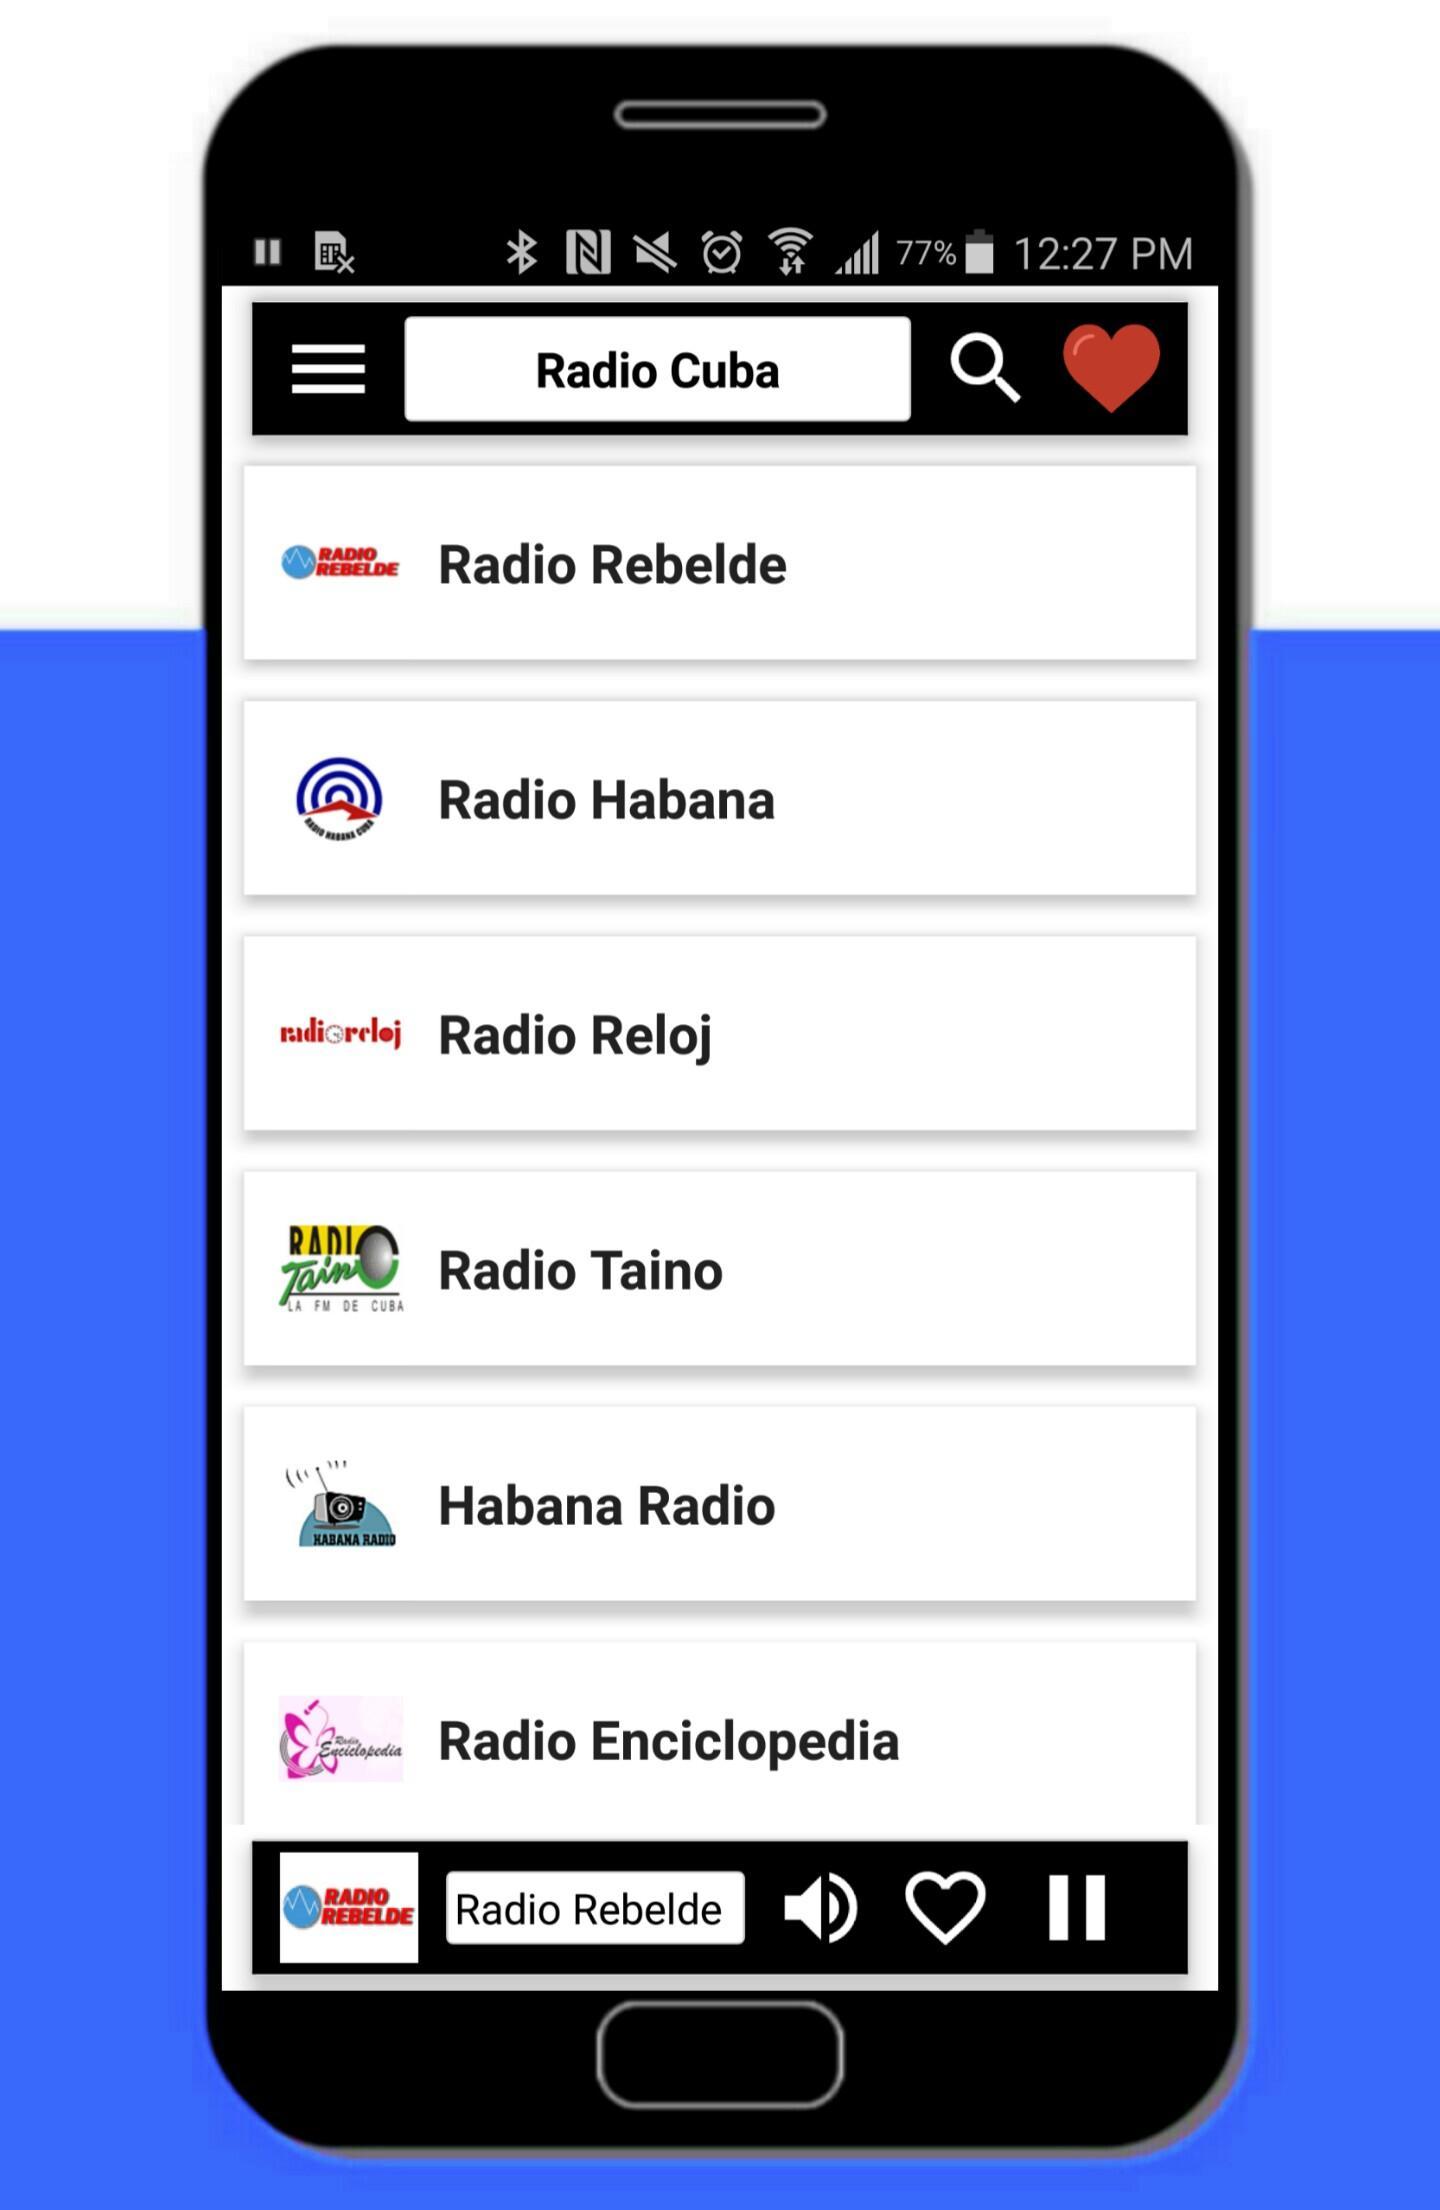 Radio Cuba - Radio Estaciones Cubanas en vivo for Android - APK Download